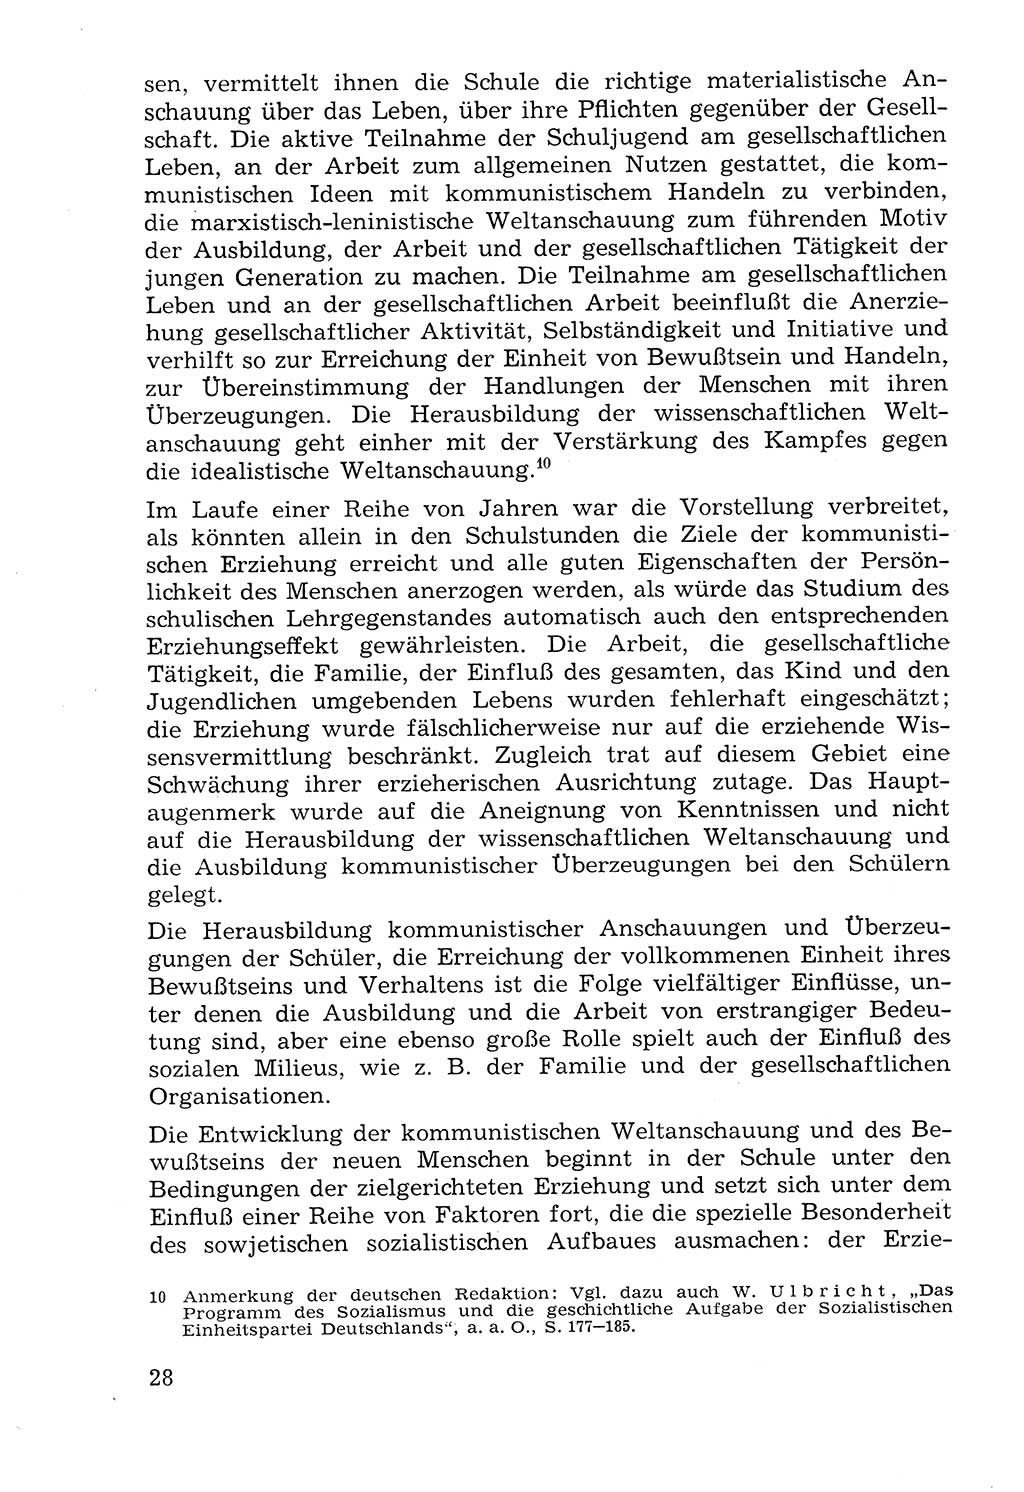 Lehrbuch der Strafvollzugspädagogik [Deutsche Demokratische Republik (DDR)] 1969, Seite 28 (Lb. SV-Pd. DDR 1969, S. 28)